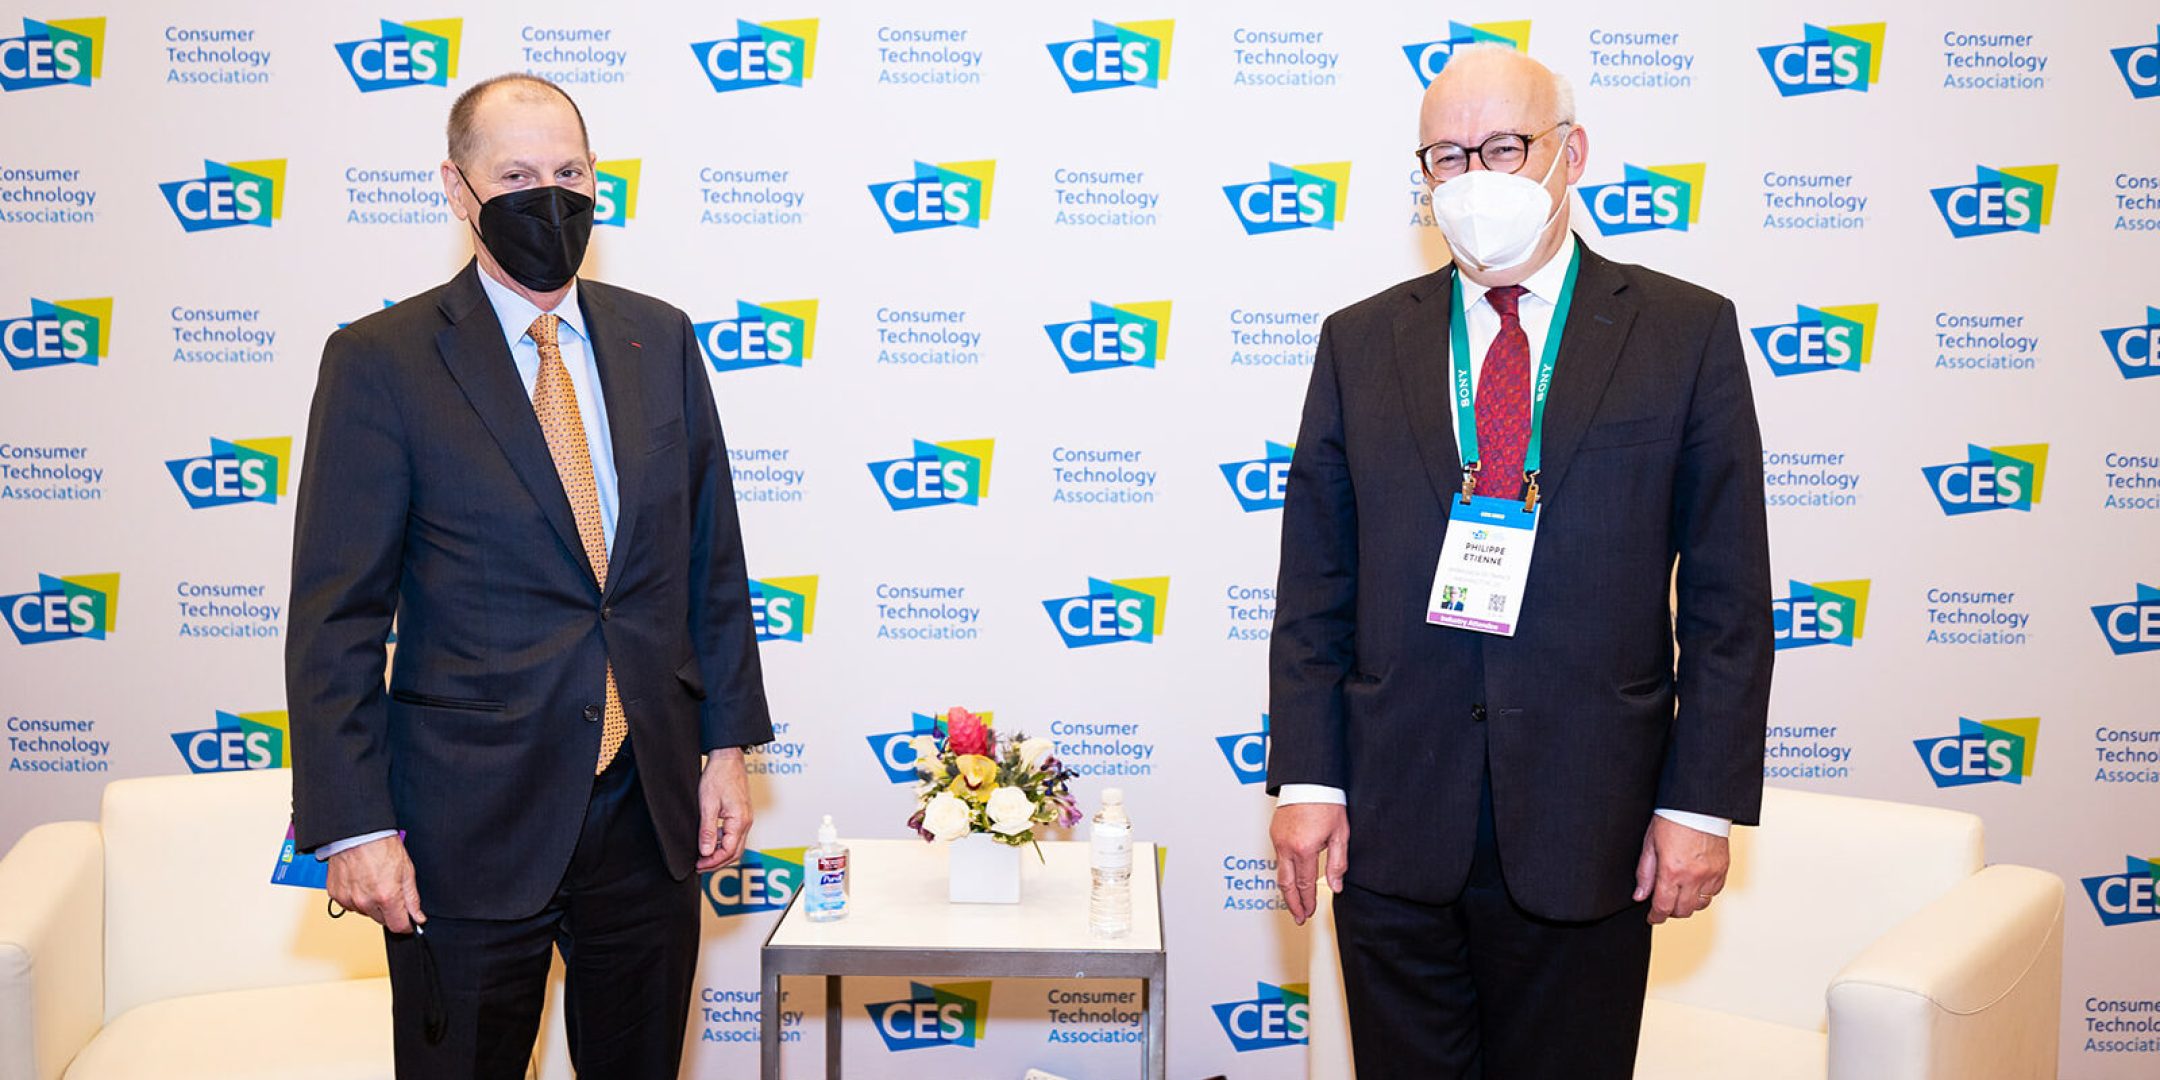 Gary J. Shapiro, Président et CEO de la Consumer Technology Association et Philippe Etienne, Ambassadeur de France aux Etats-Unis lors du CES 2022 à Las Vegas